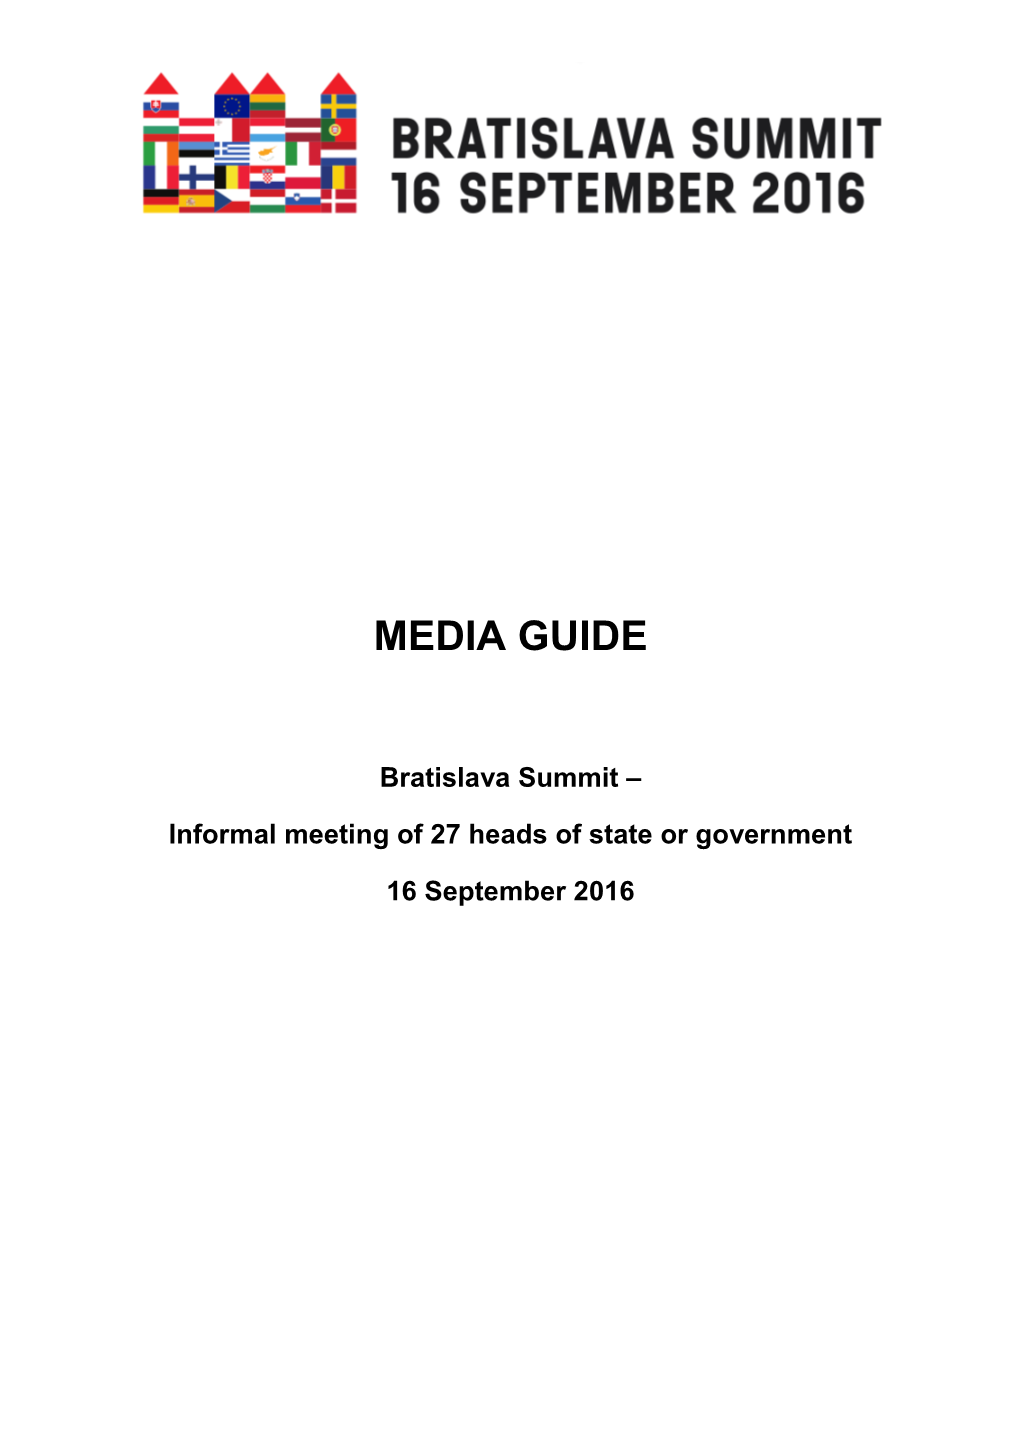 Media Guide, Bratislava Summit, 16 September 2016